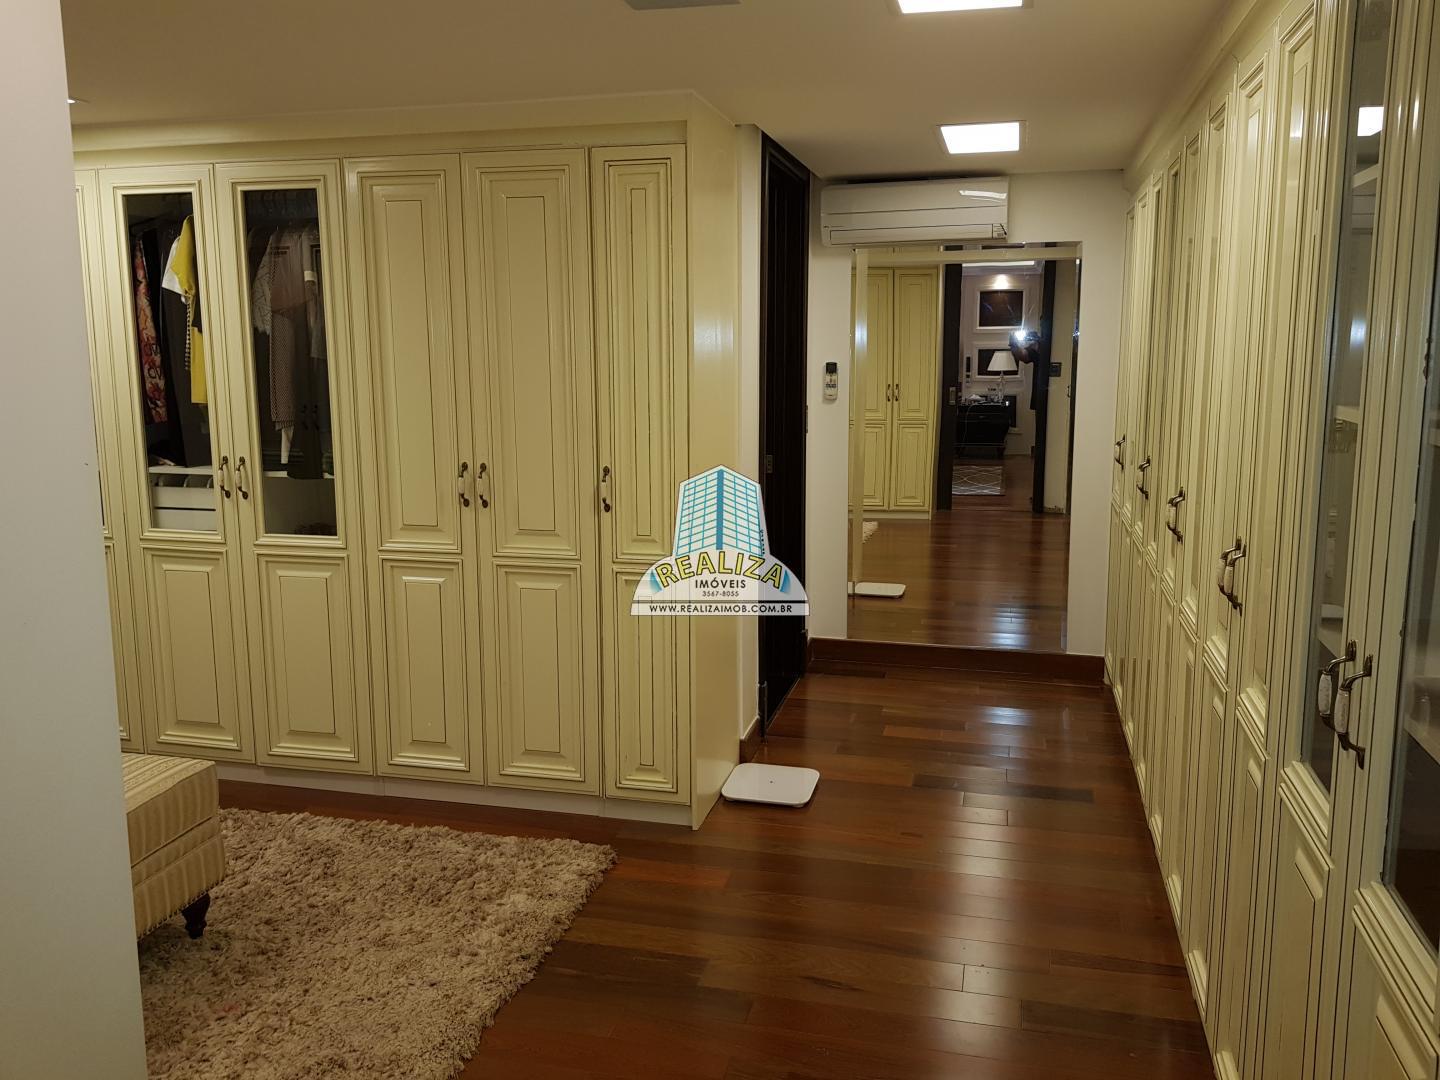 QL 06 Ponta de picolé mansão luxo mobiliada com elevador, novíssima, construída há cinco anos, aceita permuta e financiamento.